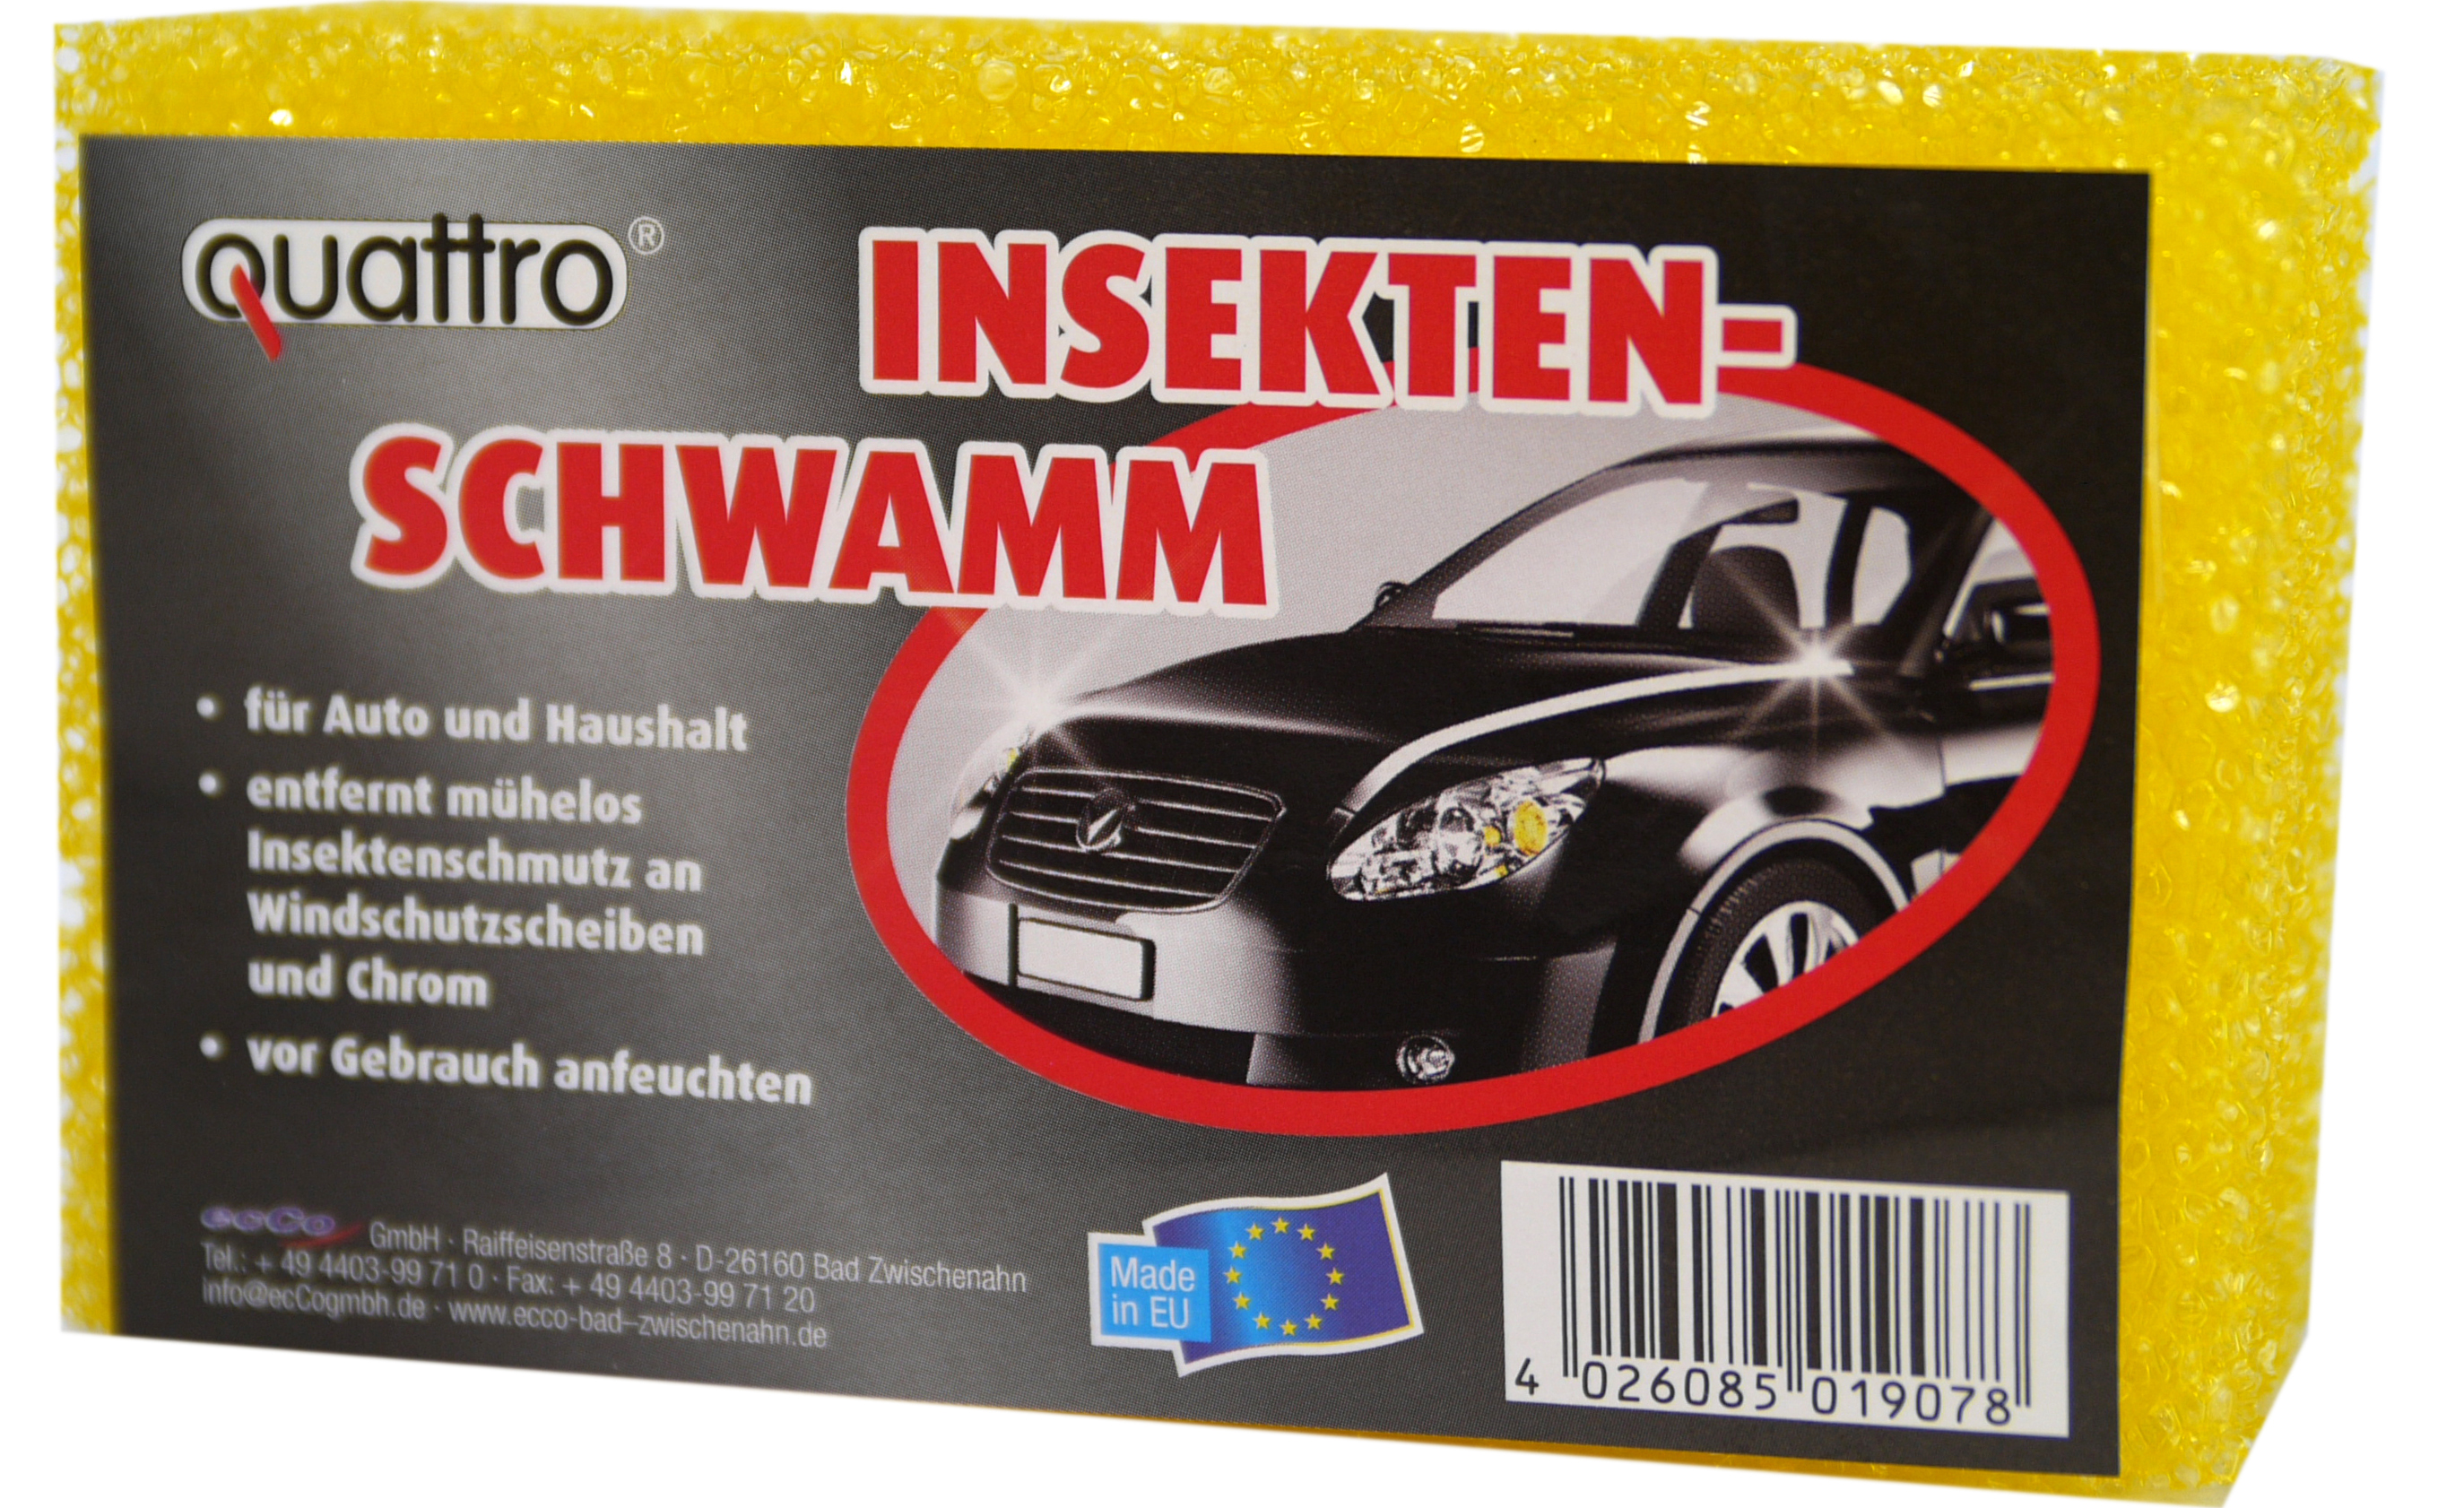 01907 - quattro Auto Insektenschwamm